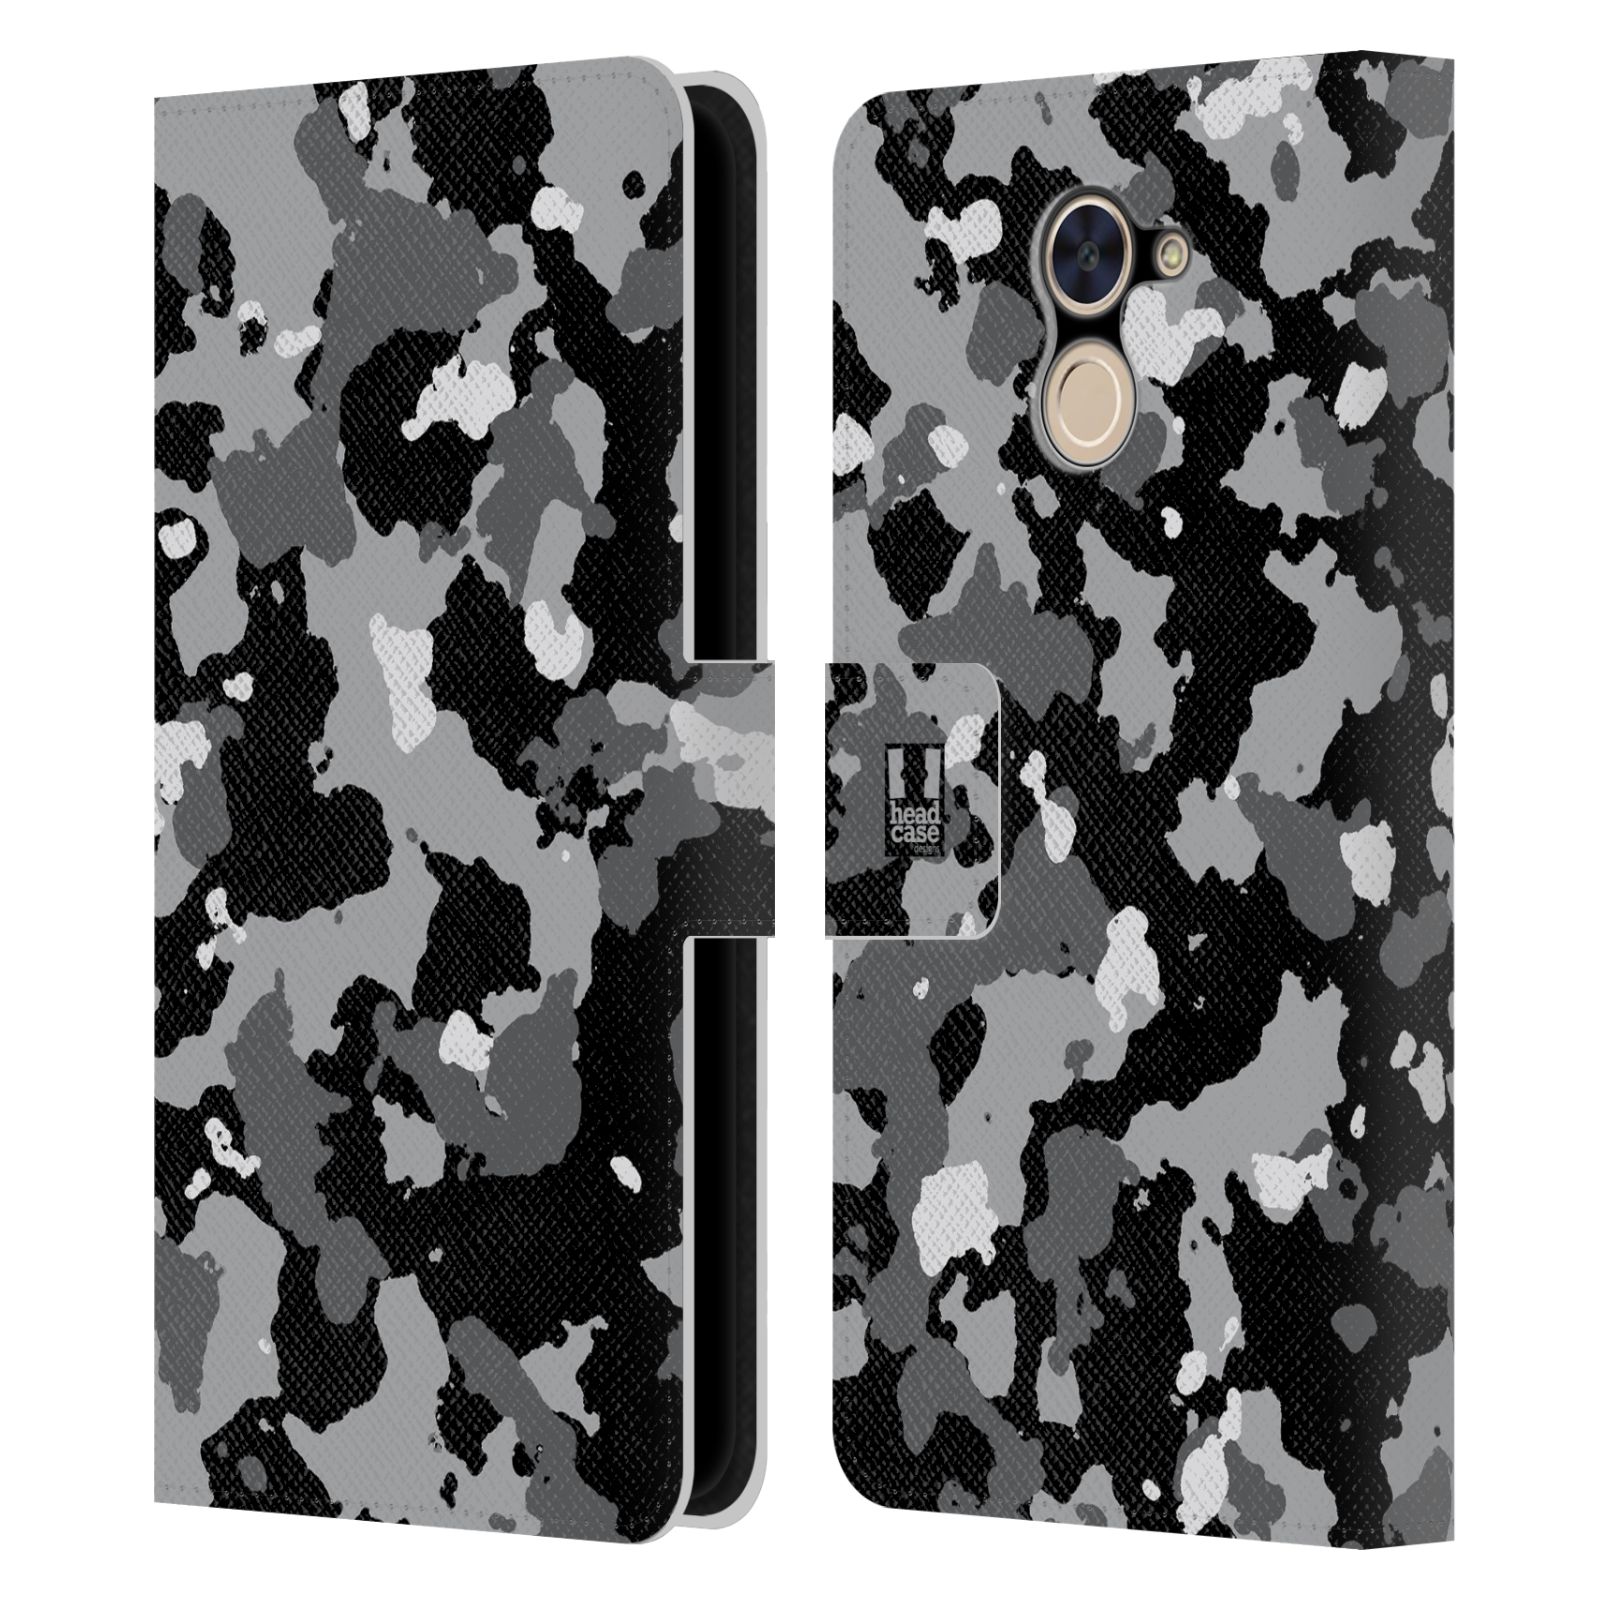 Pouzdro na mobil Huawei Y7 / Y7 Prime - Head Case - kamuflaž černá a šedá